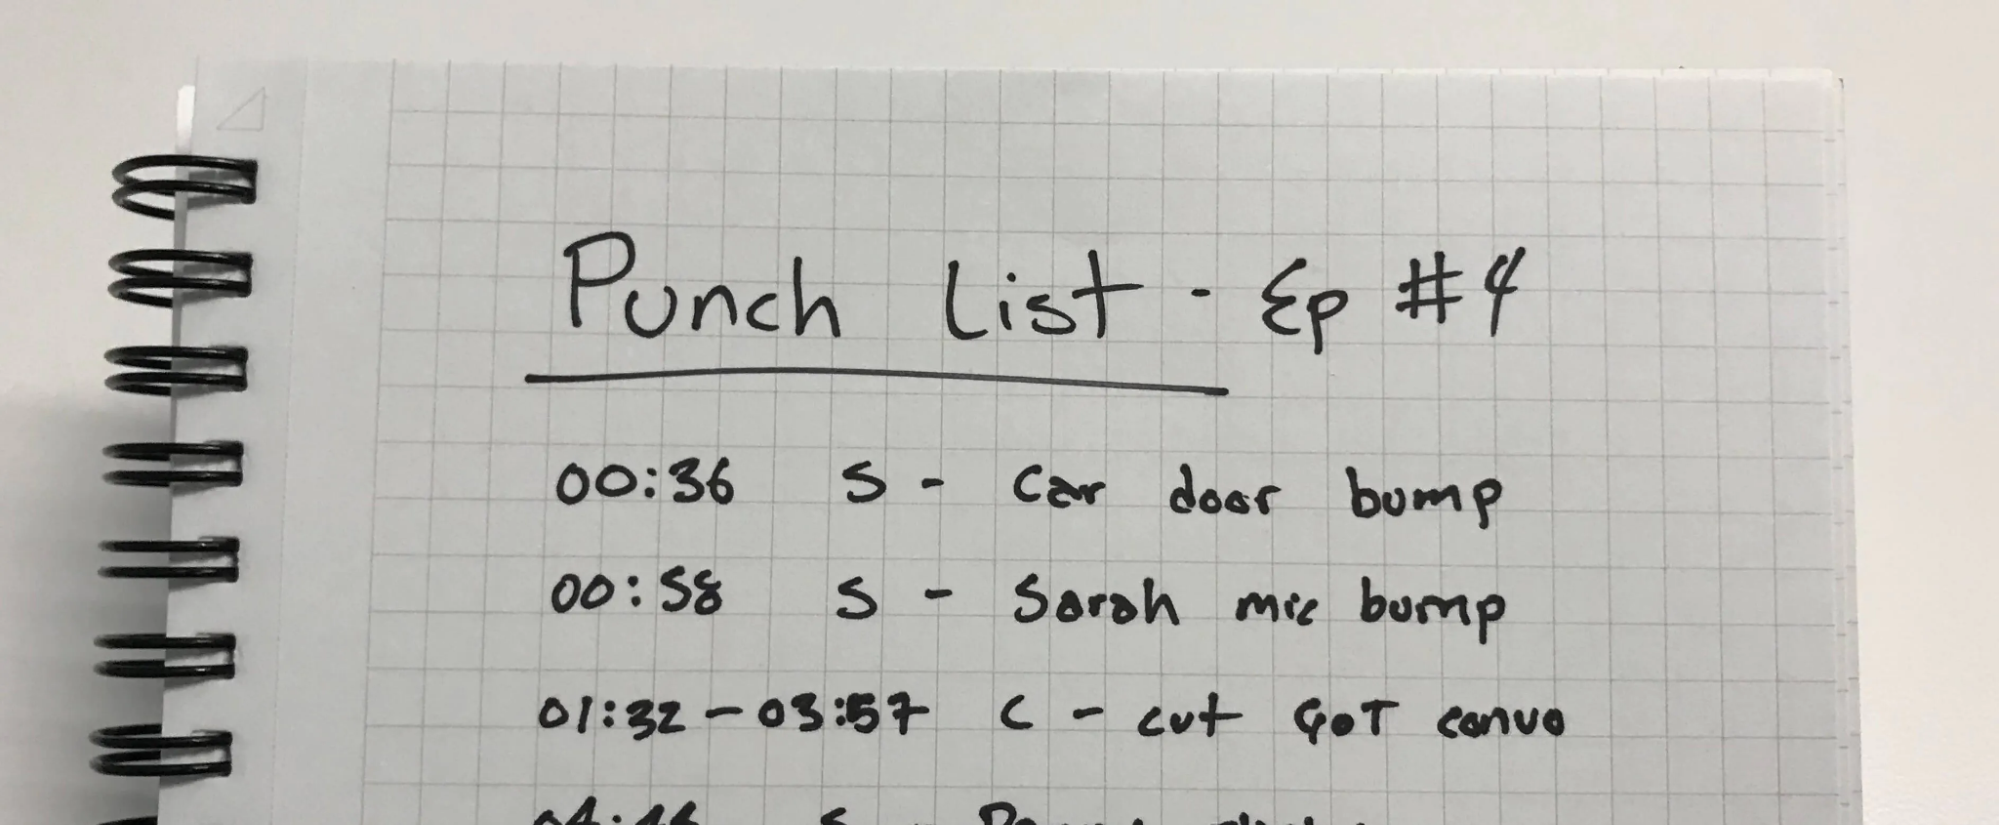 Punch List via BuzzSprout - Scribie